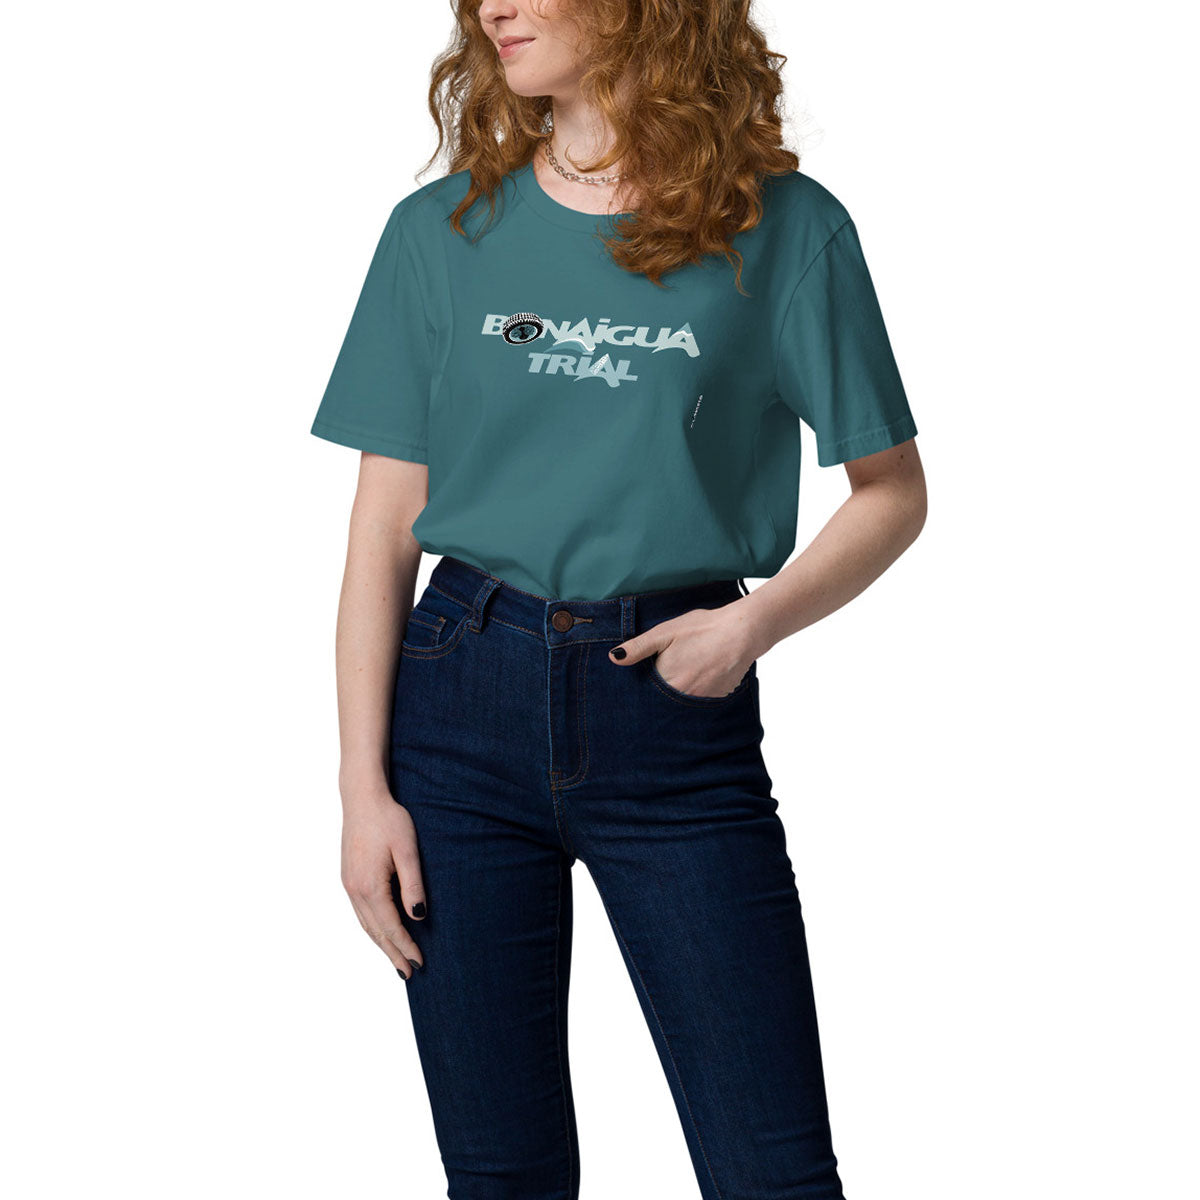 BONAIGUA TRIAL · Camiseta m/corta·Mujer/Unisex · Medium·Stargazer-171b2f